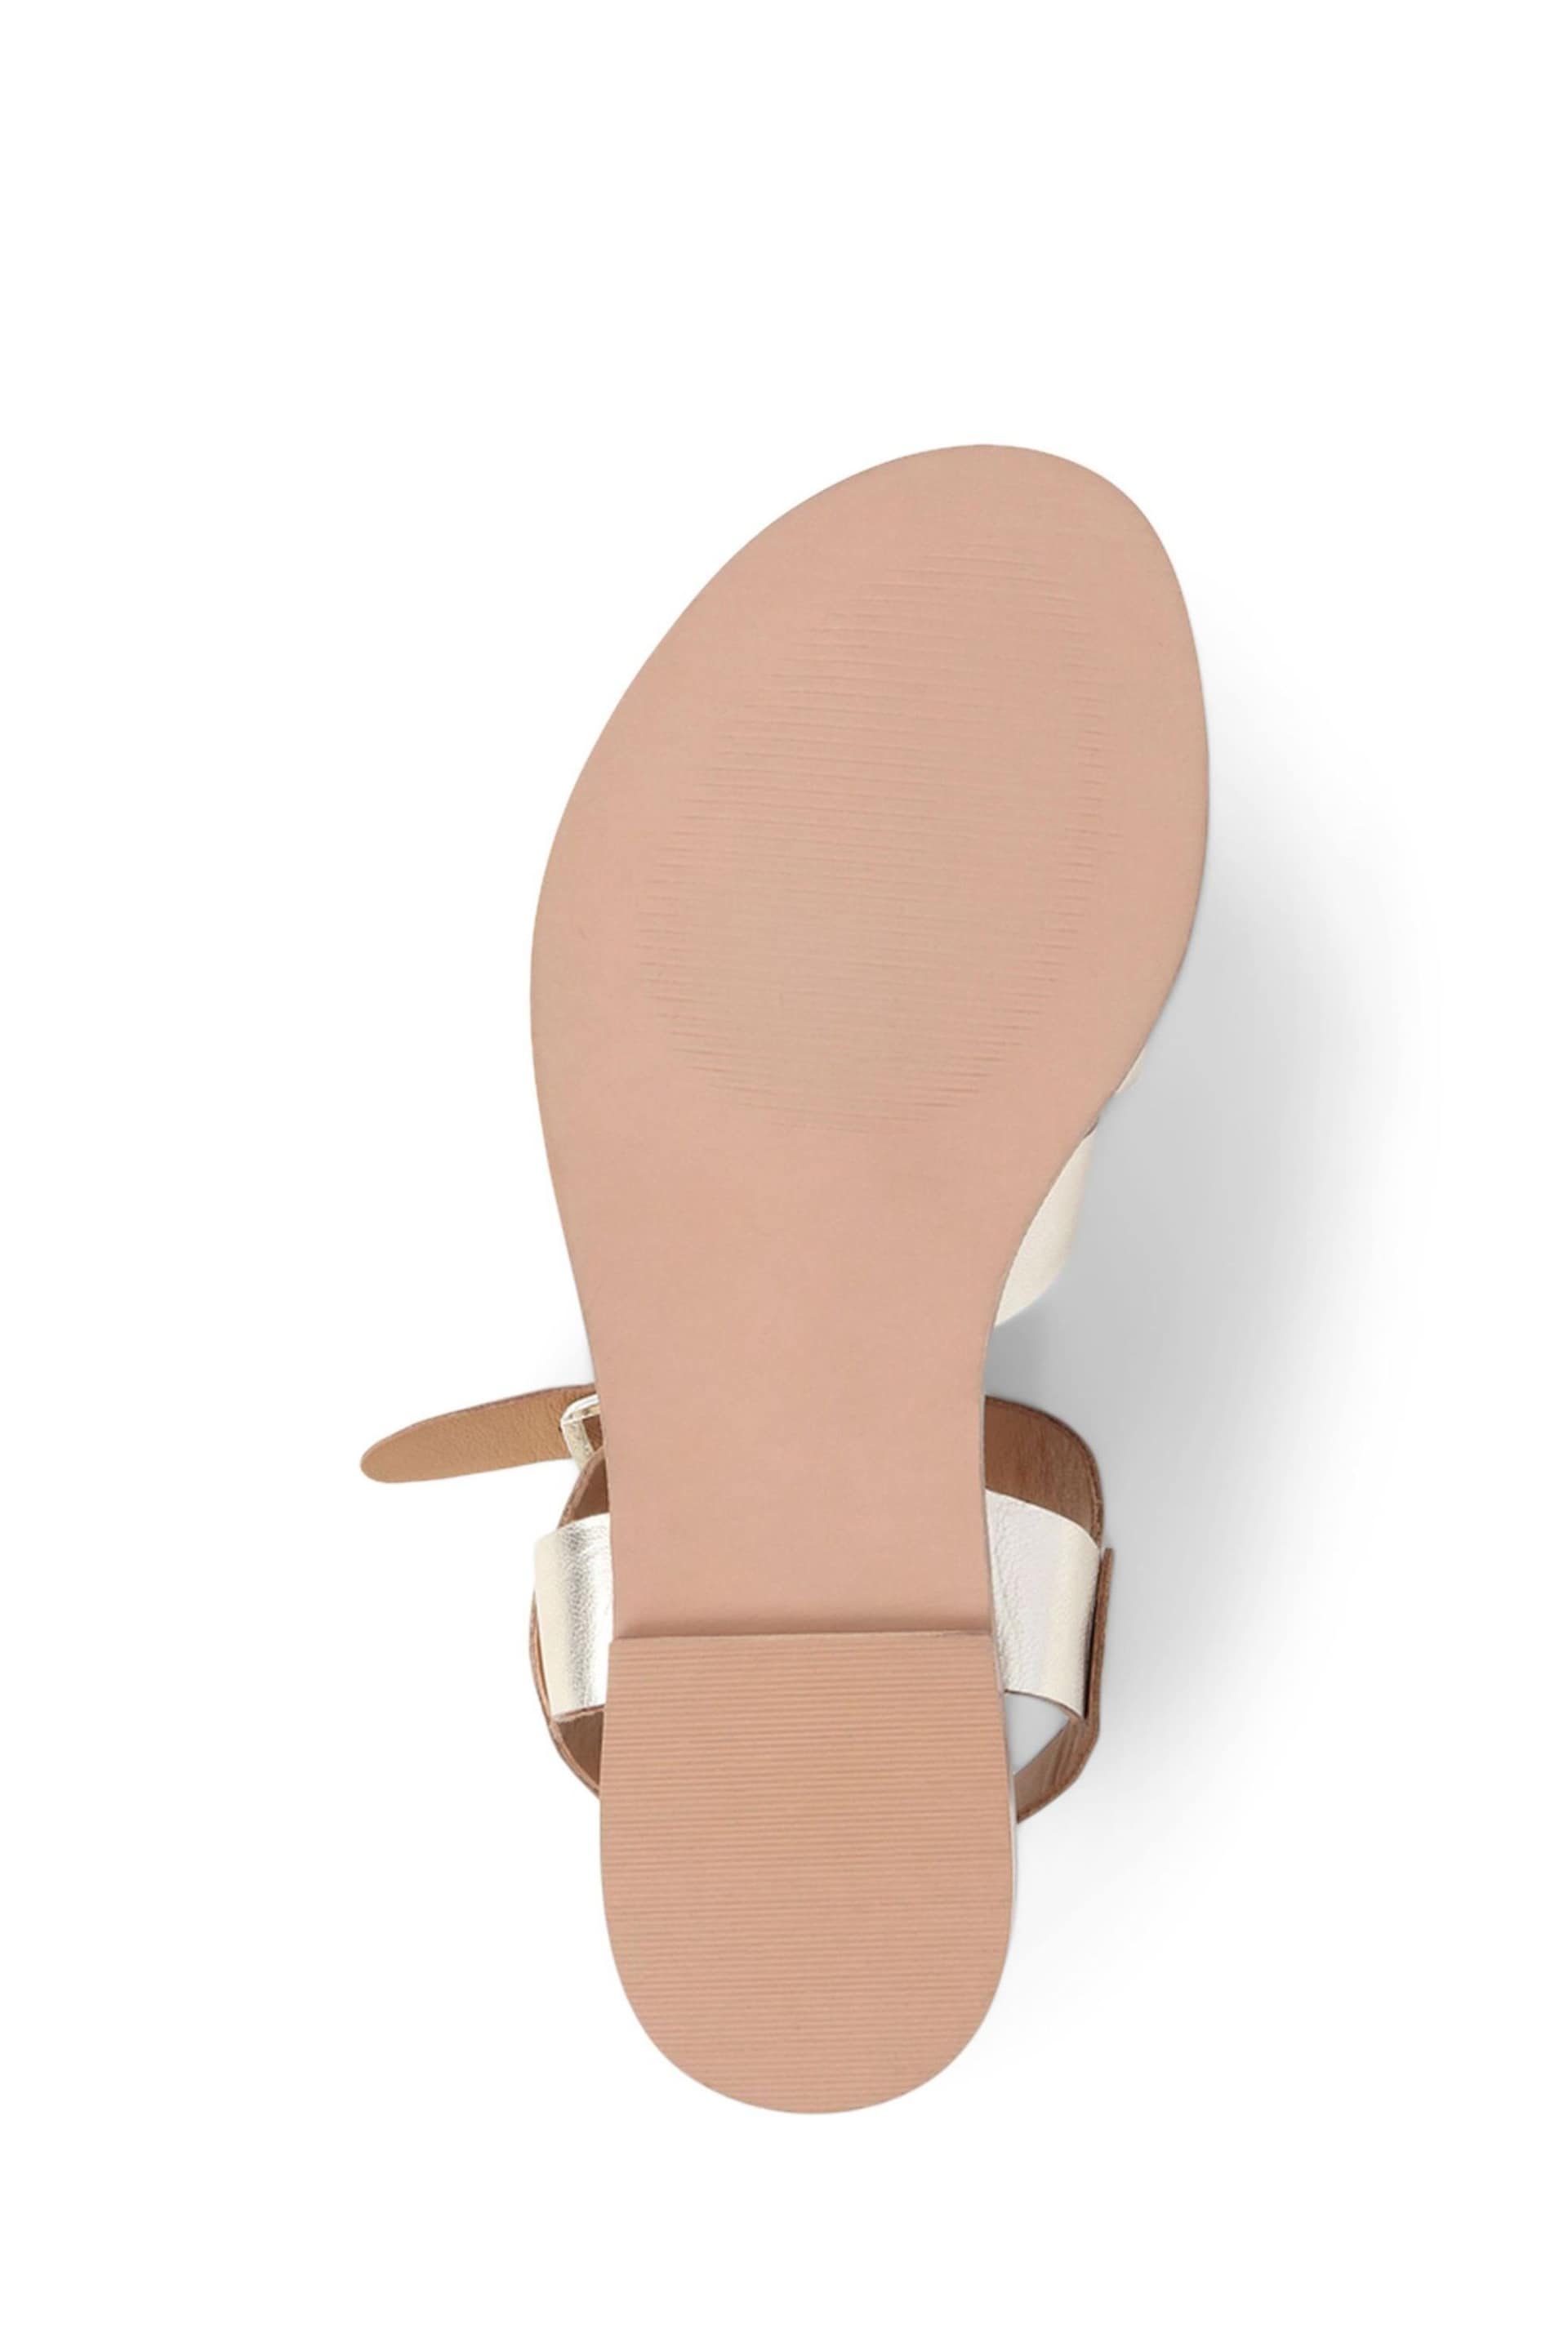 Jones Bootmaker Gold Inez Flat Sandals - Image 5 of 5